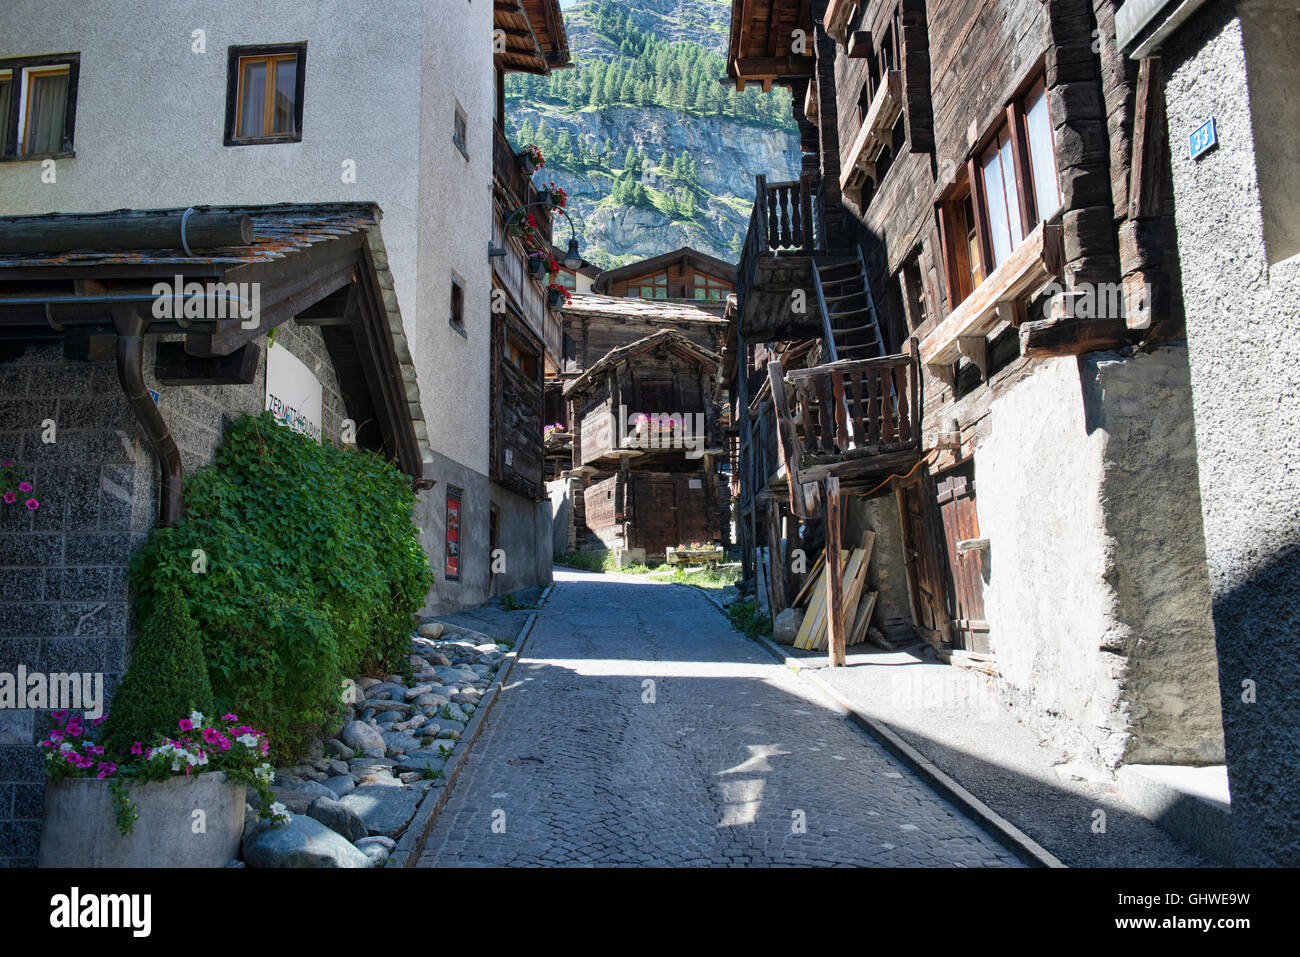 Traditionelle hölzerne Häuser im Zentrum von Zermatt, Schweiz  Stockfotografie - Alamy